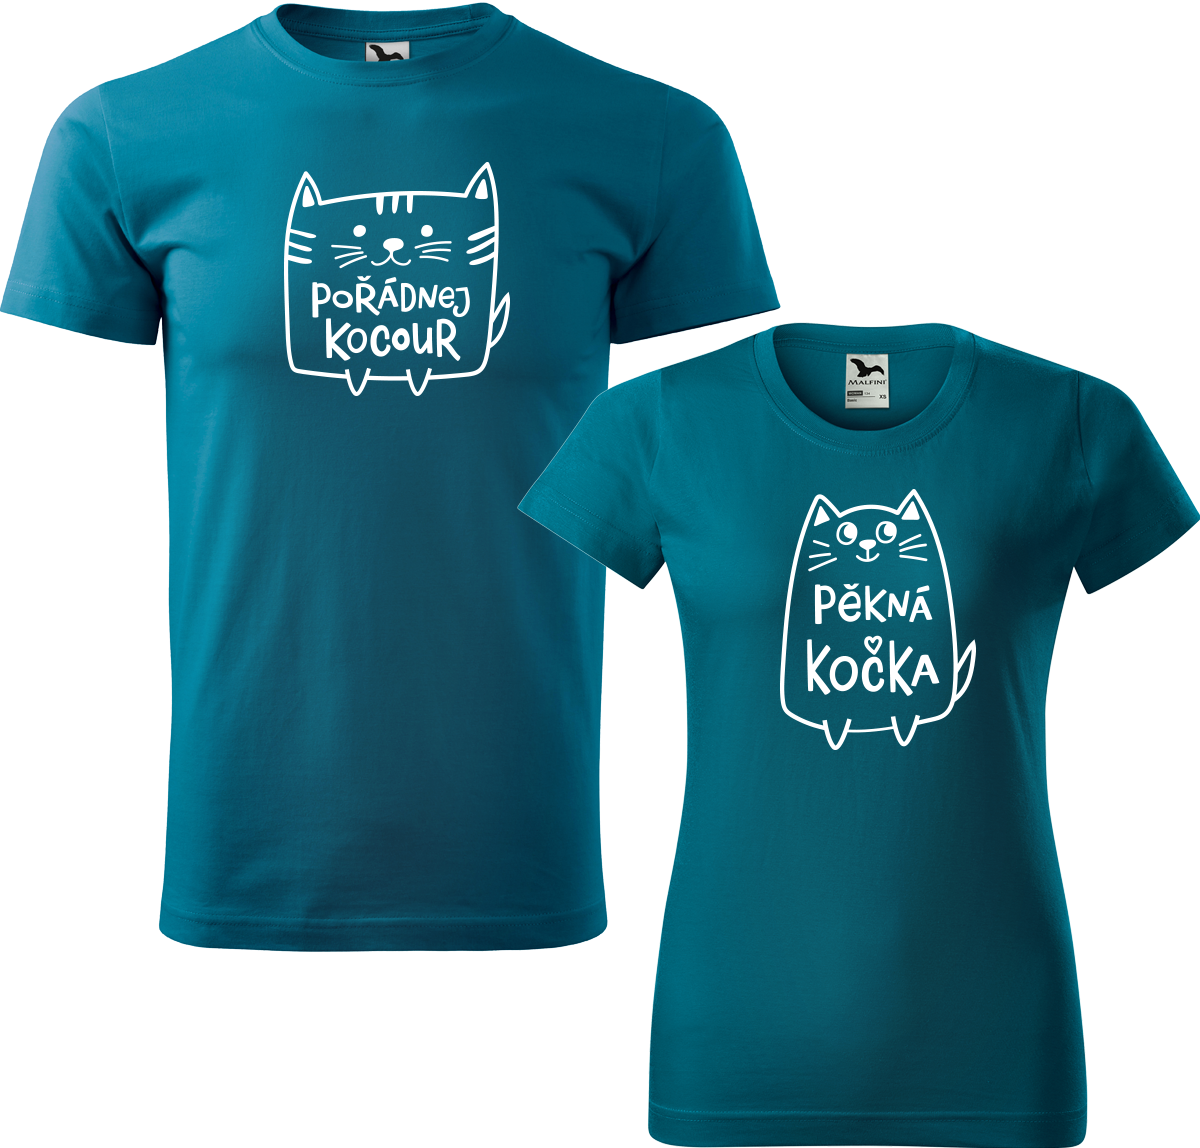 Trička pro páry - Pořádnej kocour a pěkná kočka Barva: Petrolejová (93), Velikost dámské tričko: M, Velikost pánské tričko: M